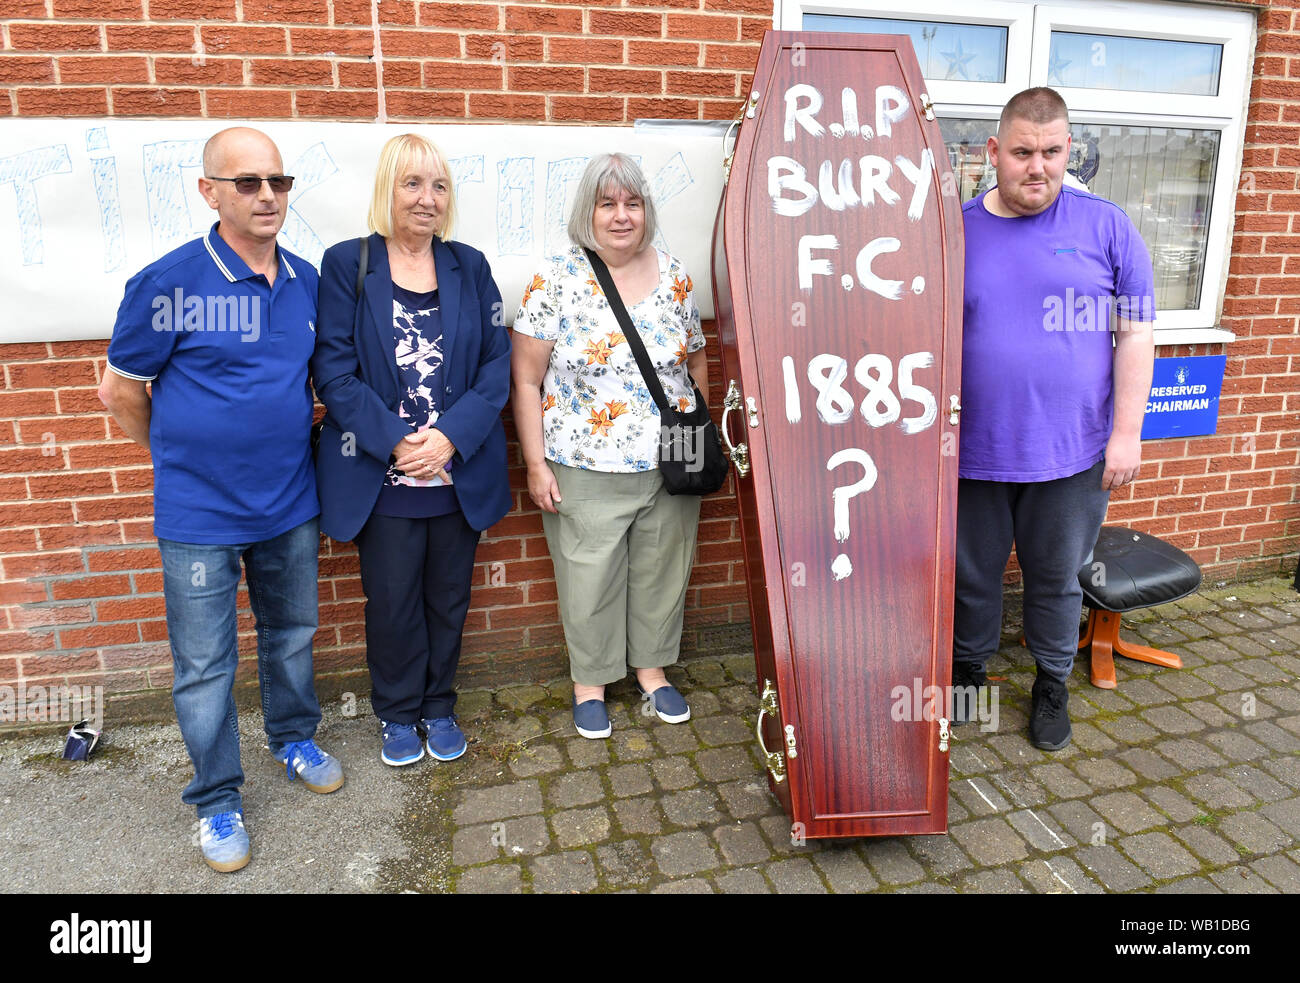 Bury ventole offrono un simbolico feretro leggere 'R.I.P Bury F.C. 1885 ?' a Gigg Lane, casa di Bury FC. Foto Stock